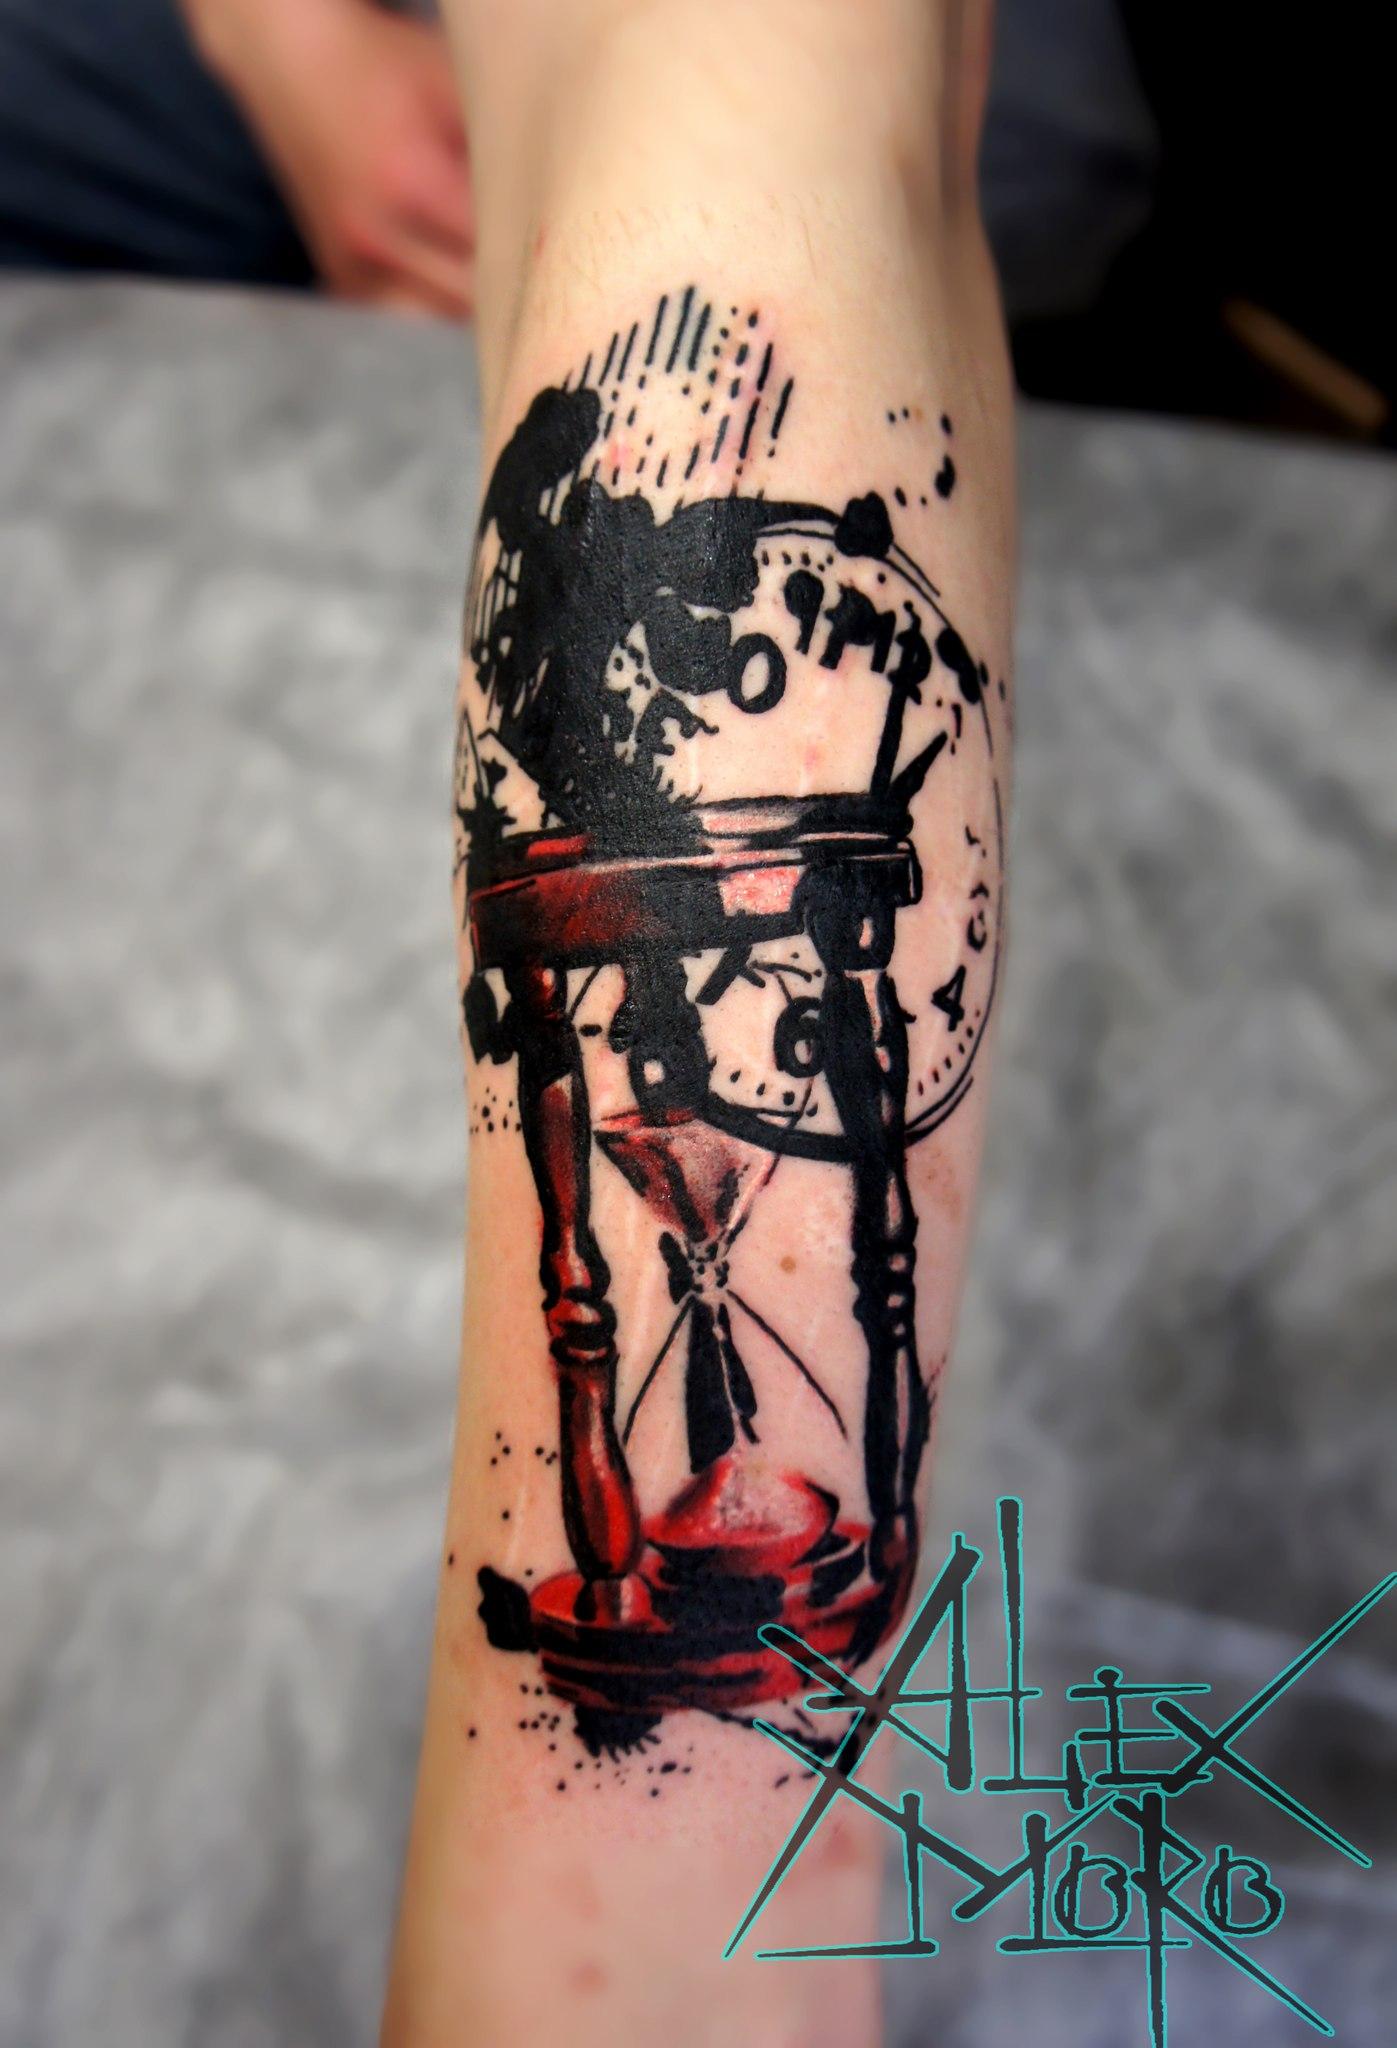 Художественная татуировка "Часы" от Александра Морозова